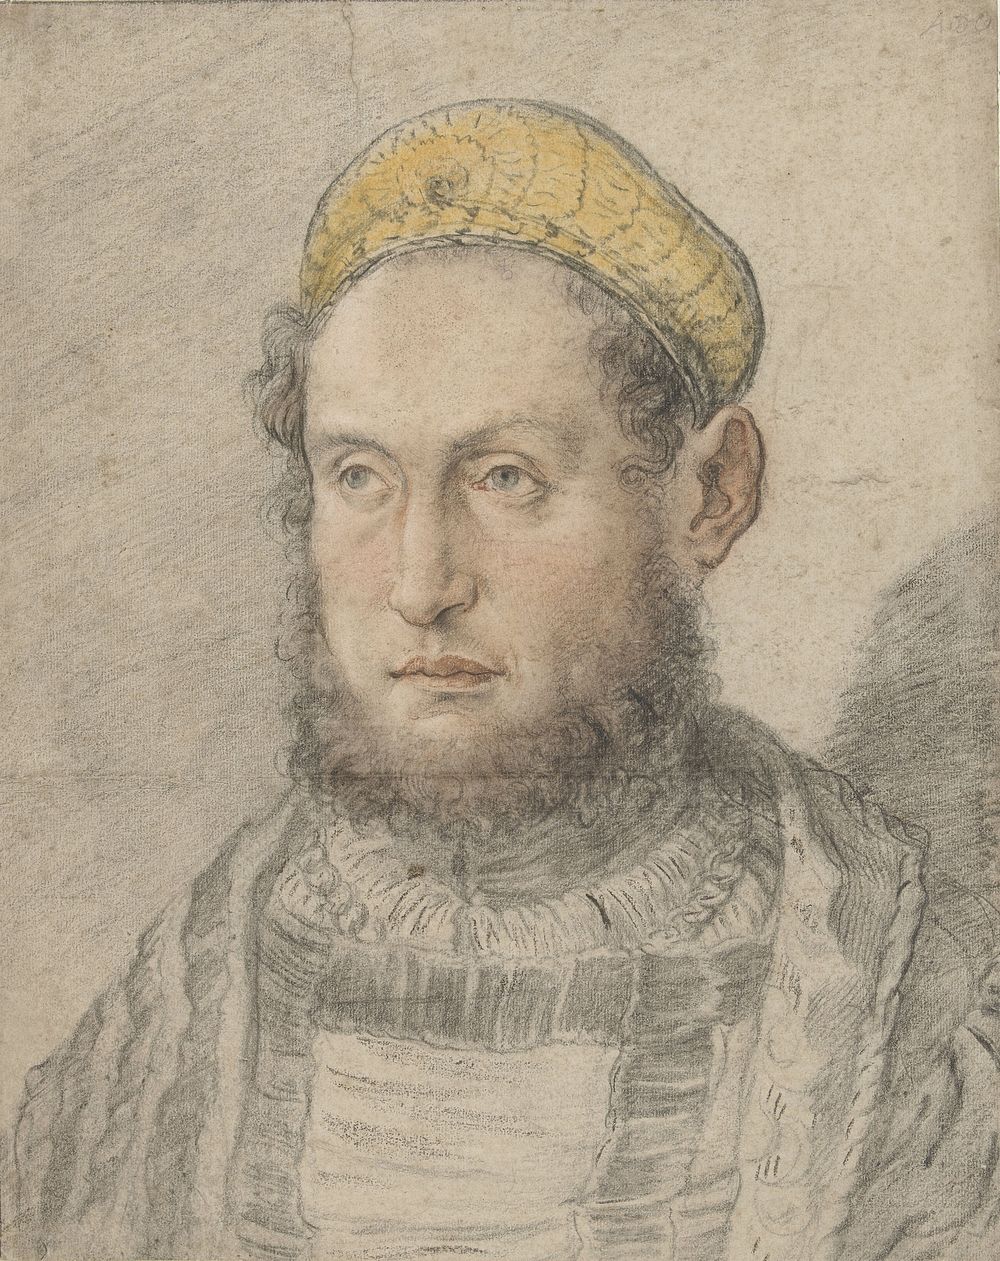 Portret van een voorname man met baard en goudkleurige muts (c. 1505 - c. 1507) by Hans Burgkmair I